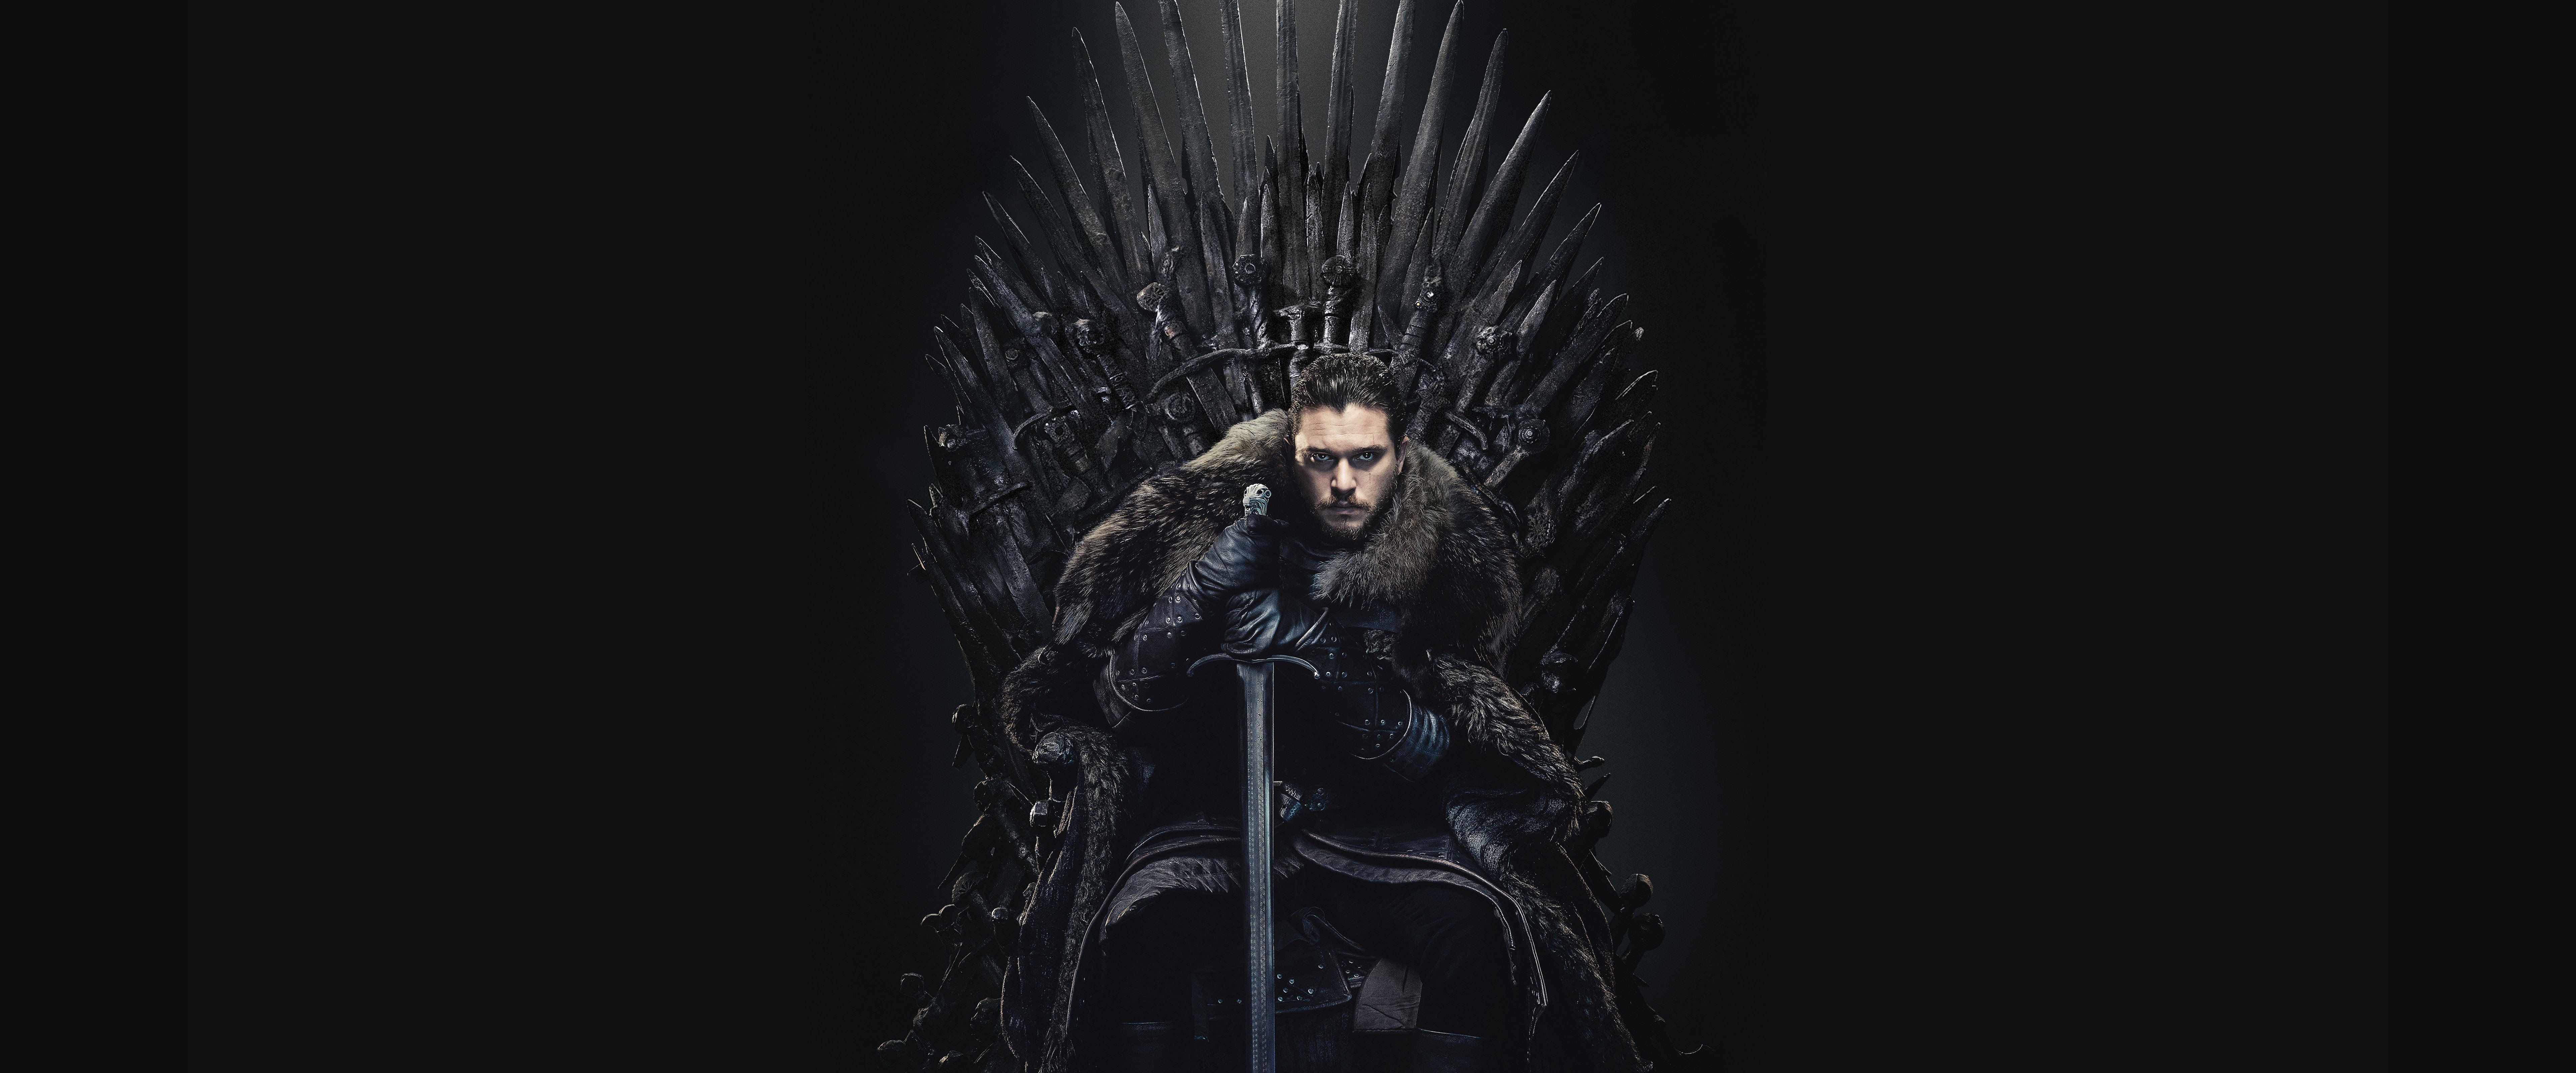 Hình nền Jon Snow Game of Thrones Chiếc ghế sắt Mùa 8 là một trong những tác phẩm nghệ thuật tuyệt vời, mang đến cho bạn cảm giác hứng khởi và đam mê. Hãy tải về để trang trí cho màn hình điện thoại của bạn.